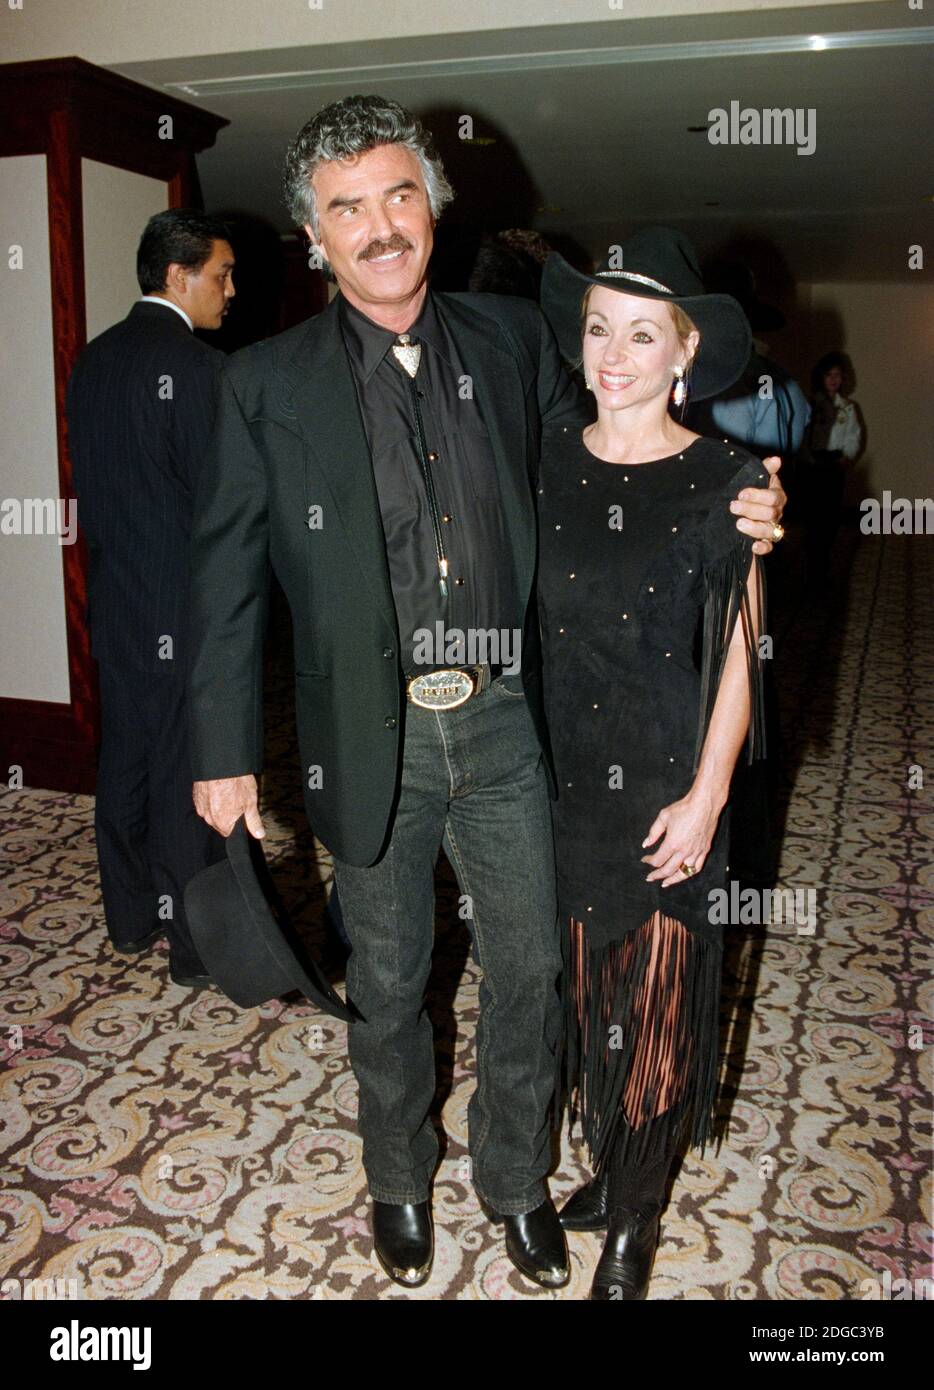 ARCHIVIO: LOS ANGELES, CA. 12 agosto 1995: Attore Burt Reynolds & Pam Seals al Golden Boot Awards al Century Plaza Hotel di Los Angeles. Foto del file © Paul Smith/Caratteristiche Foto Stock